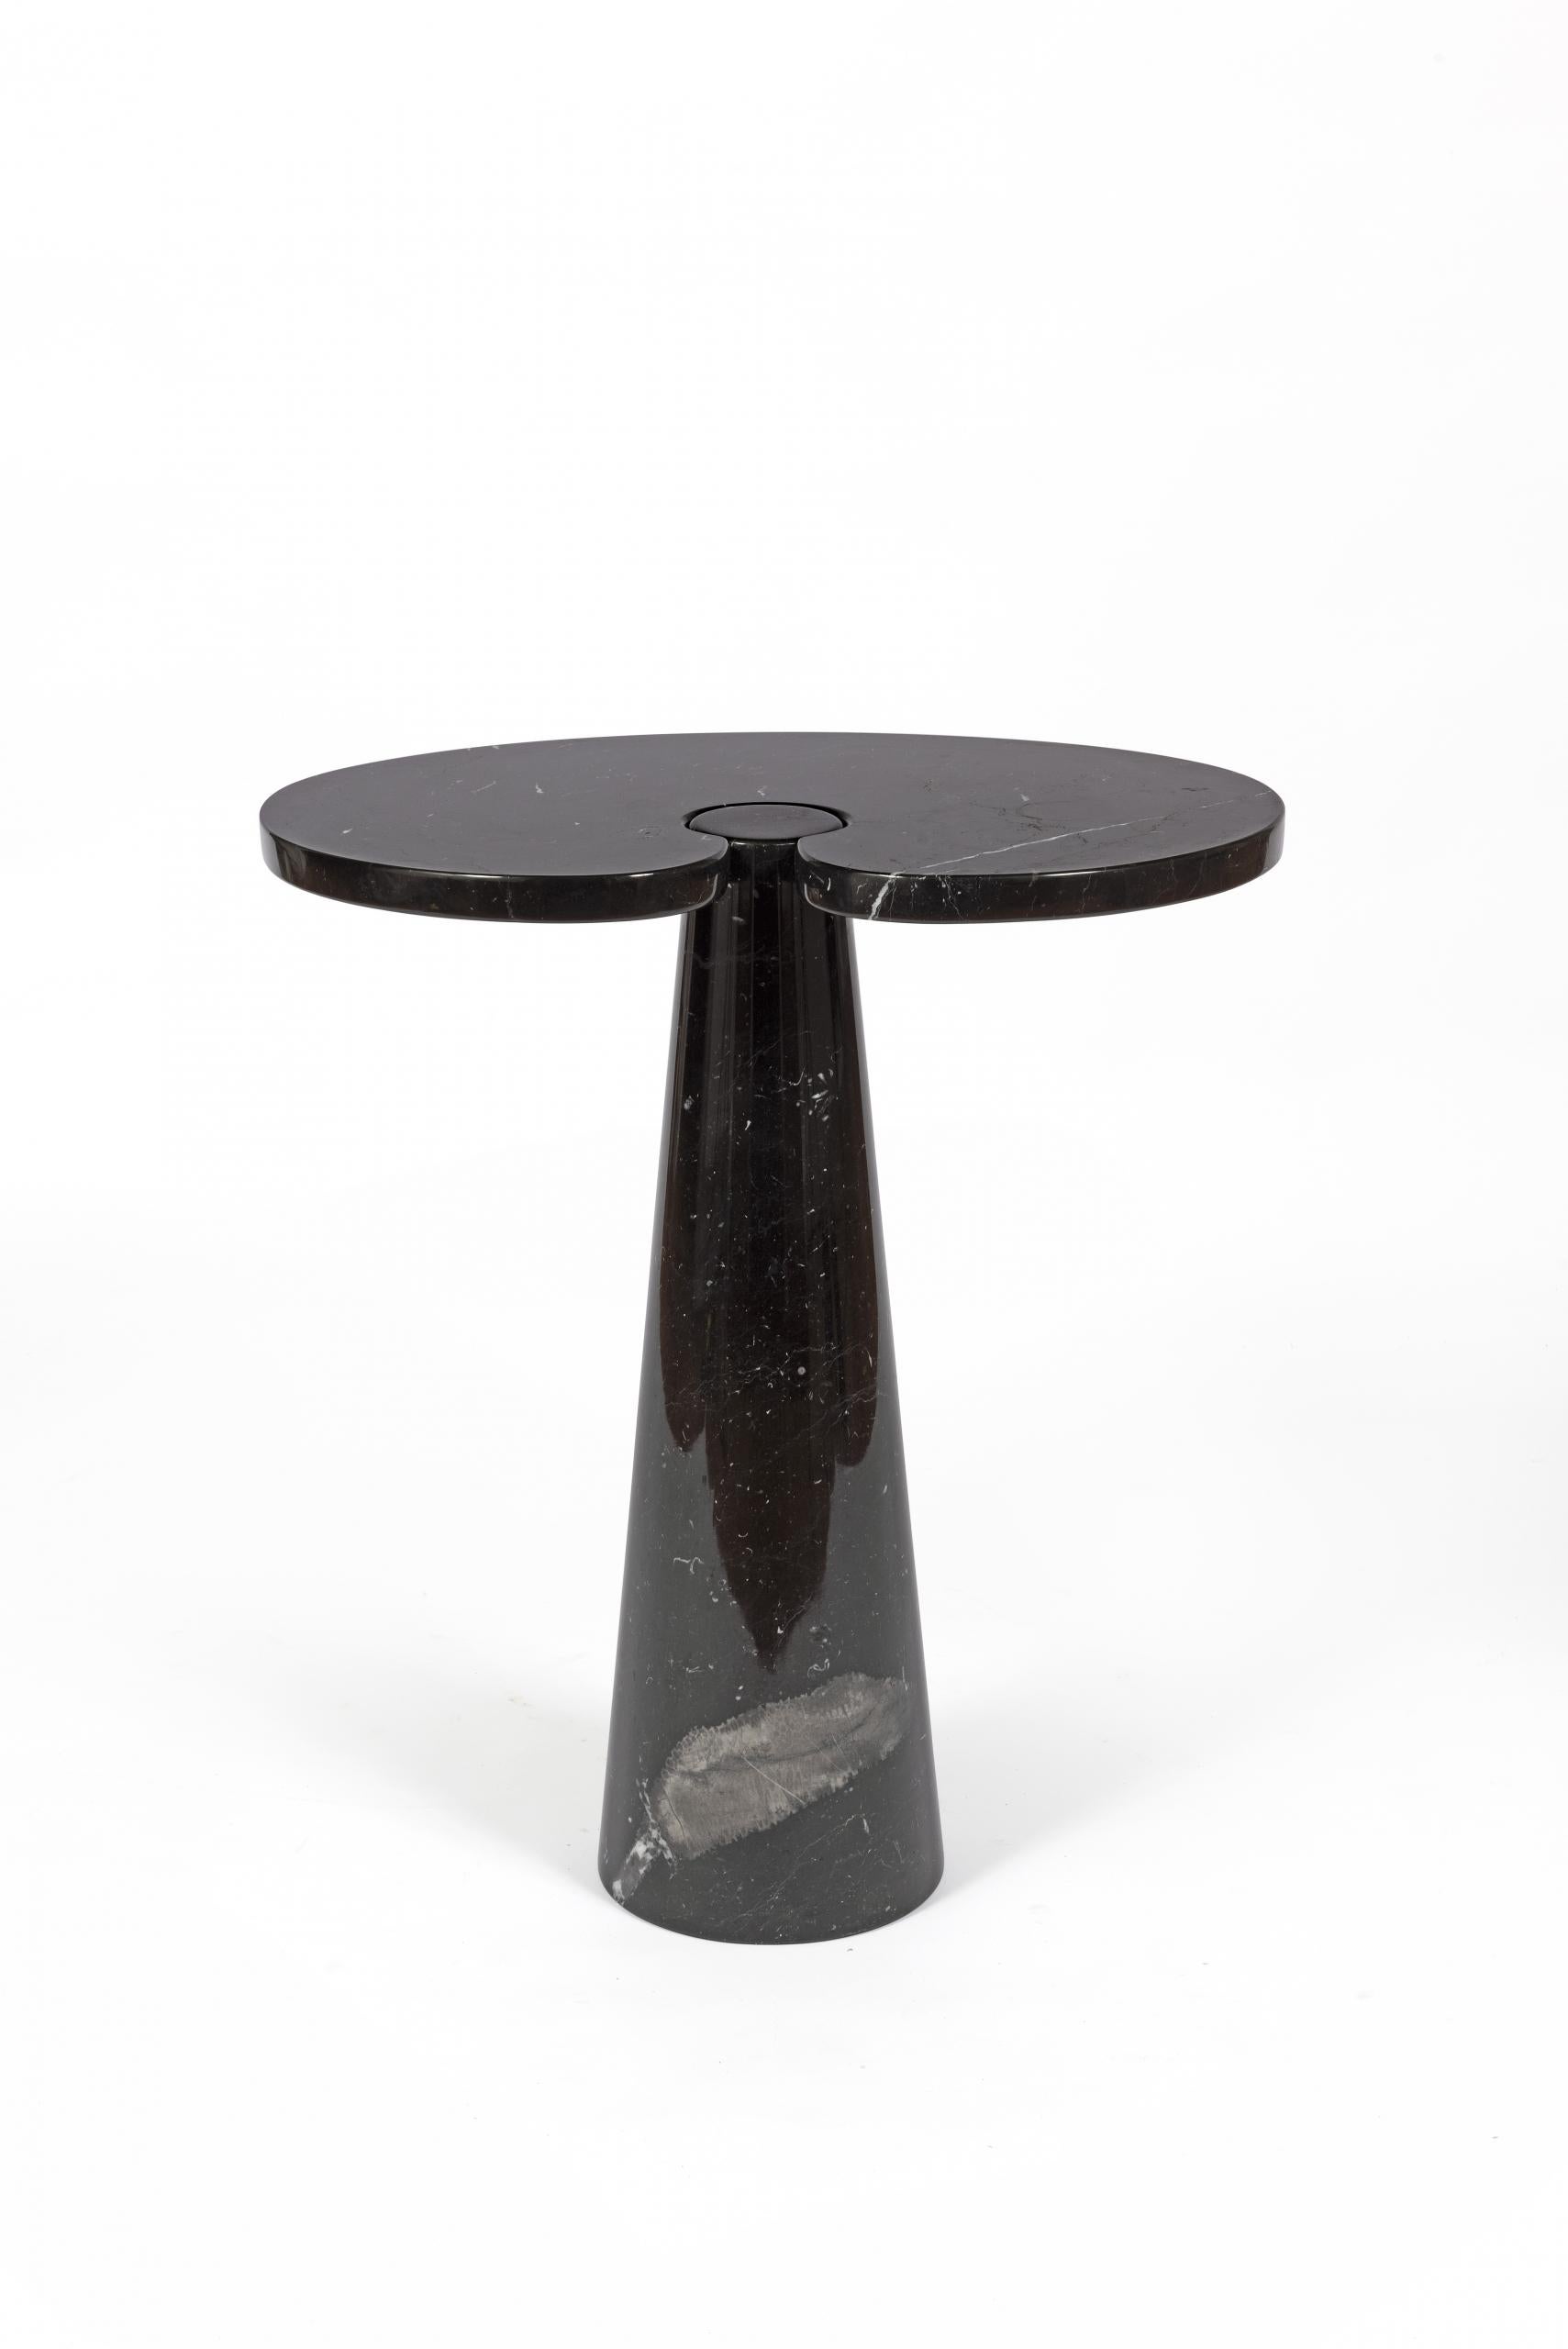 Table haute d’Angelo Mangiarotti en marbre Marquina, de la série Eros pour Skipper, Italie, 1975-1999.

Design avec plateau en forme d’haricot et pied conique.

Dimensions : H 73 x L 66 x P 45.
  